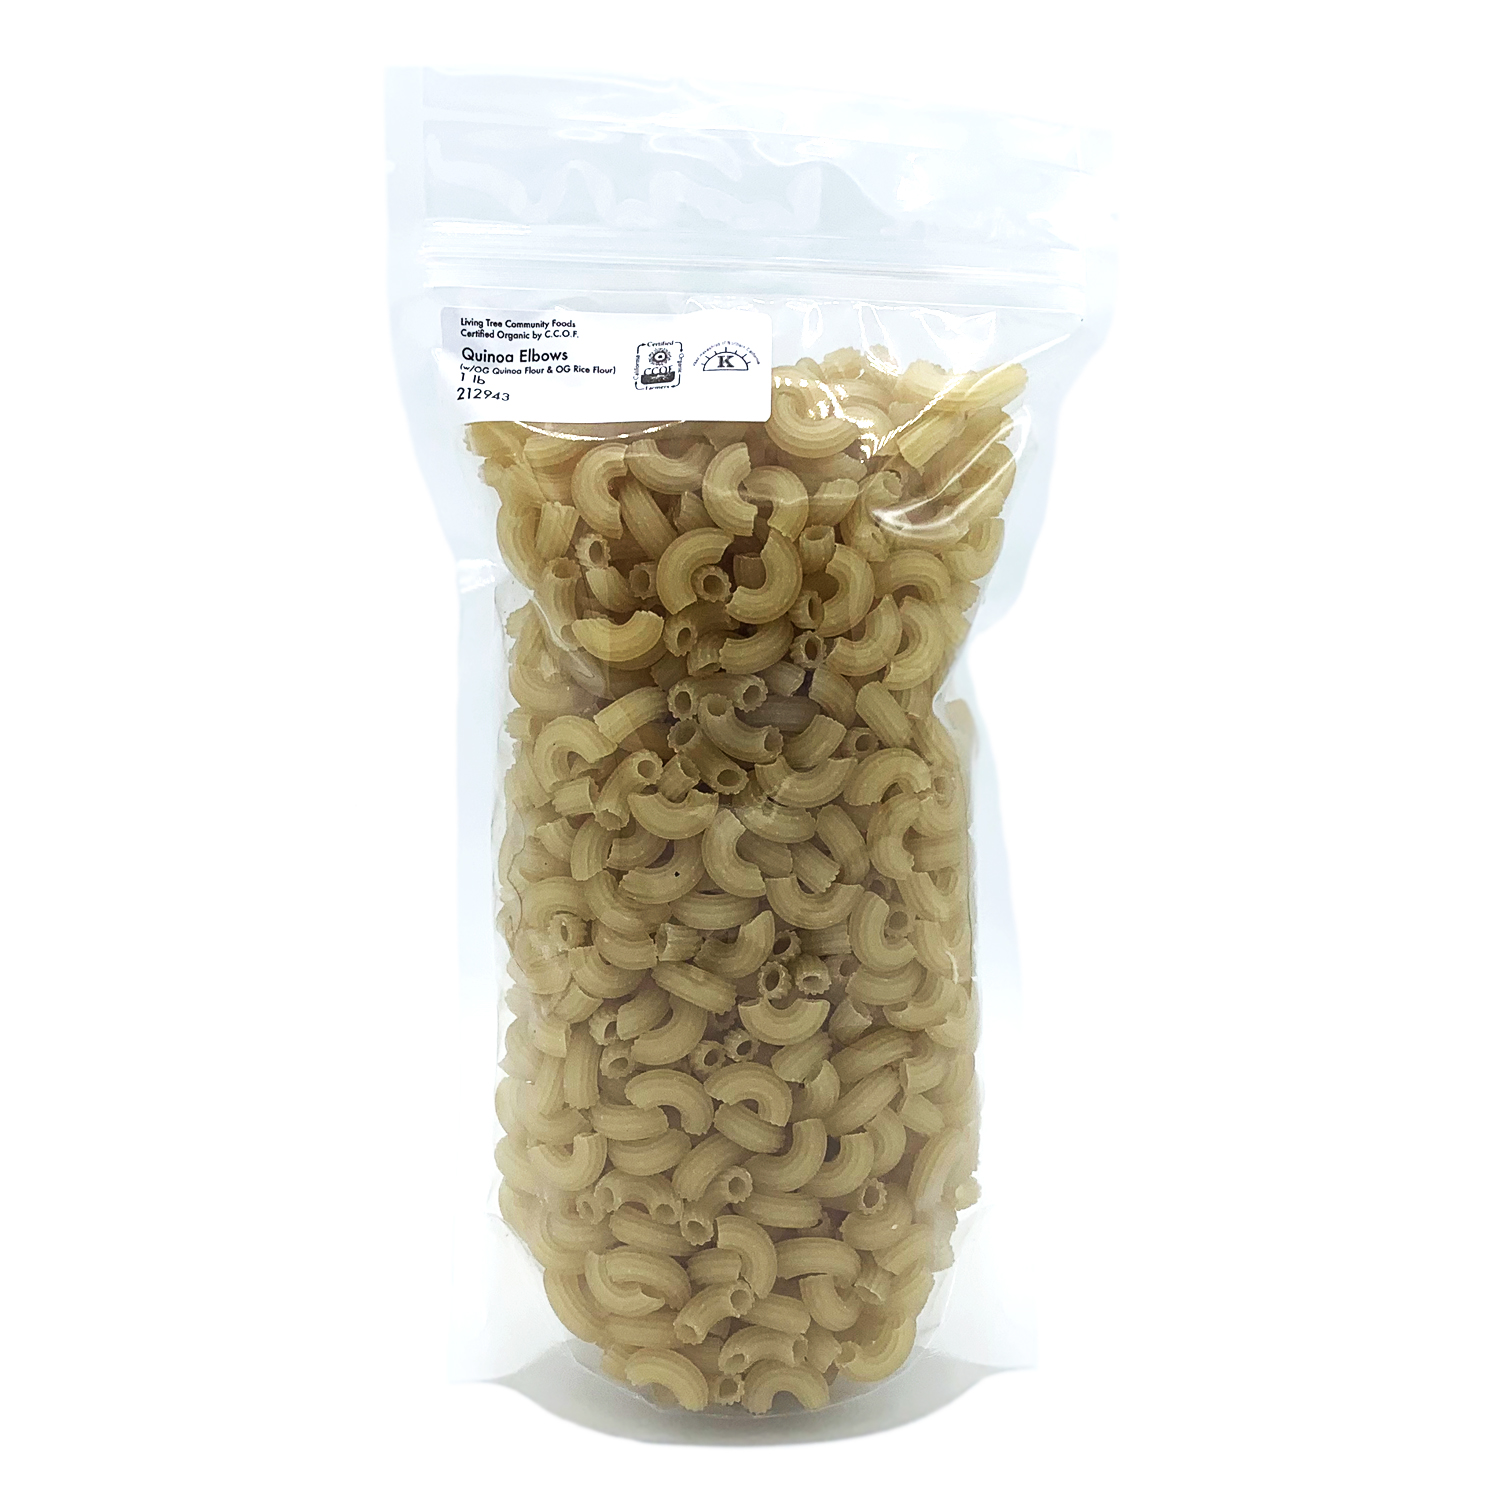 Quinoa Elbows Pasta Package